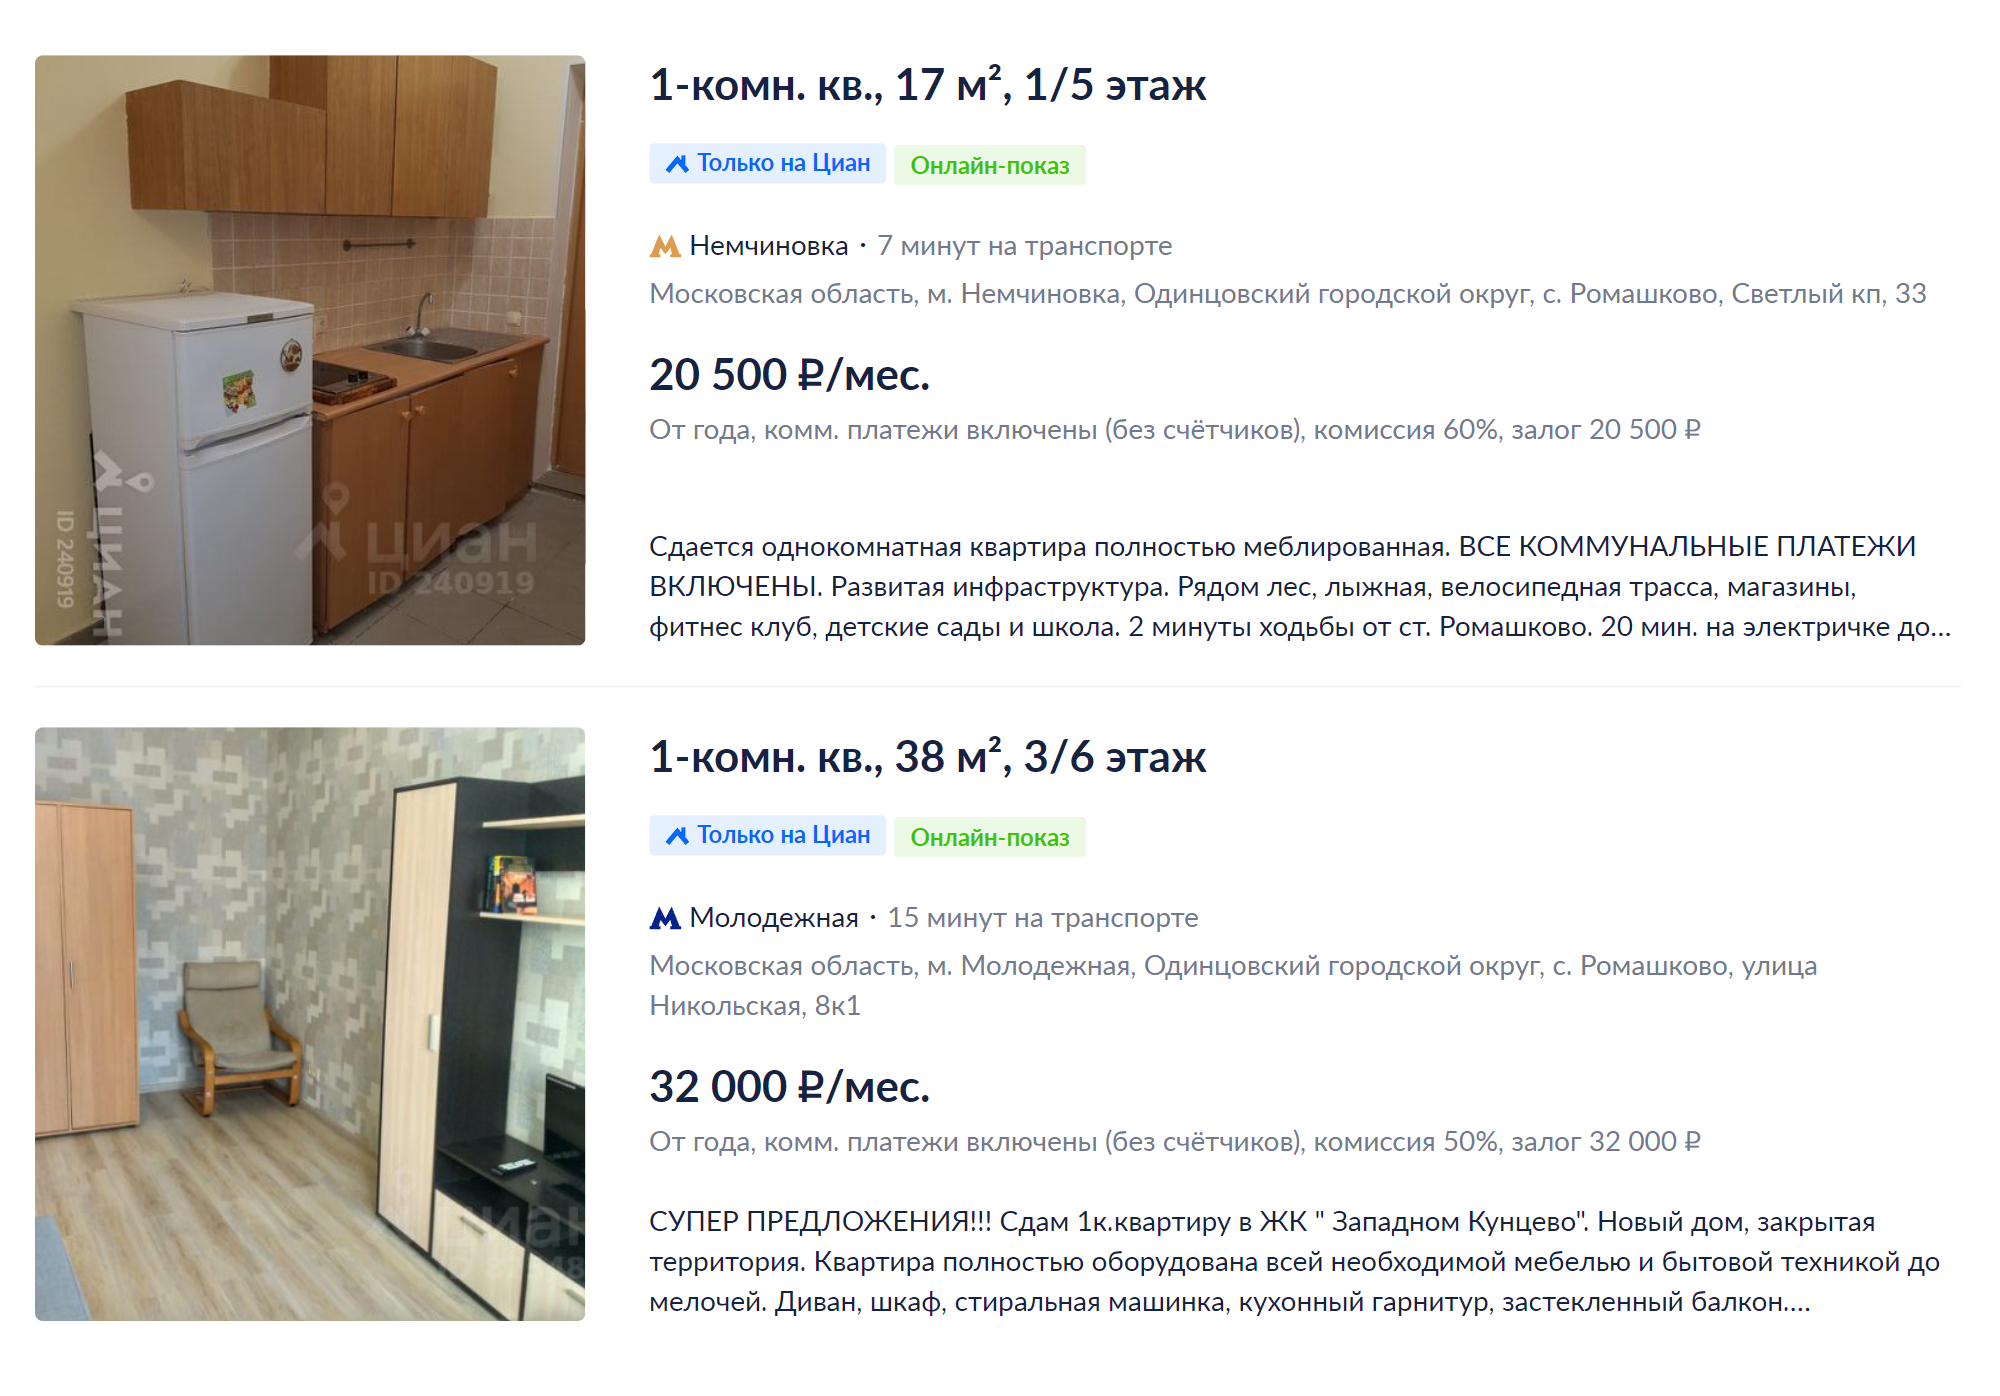 За 20 000 ₽ в Ромашкове можно снять только студию со стареньким ремонтом. Источник: cian.ru